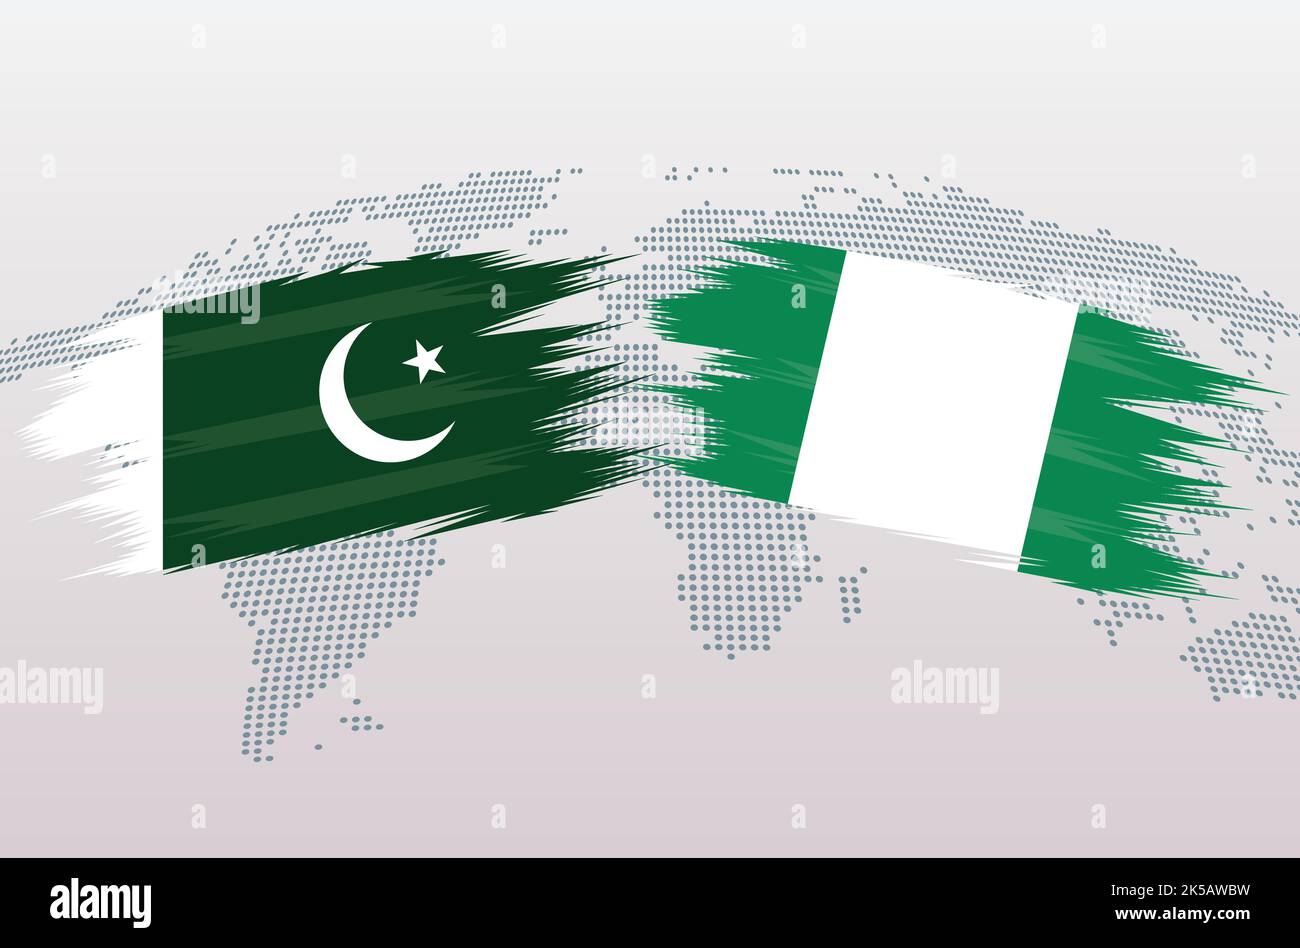 Bandiere Pakistan vs Nigeria. Repubblica islamica del Pakistan vs bandiere nigeriane, isolate su sfondo grigio della mappa del mondo. Illustrazione vettoriale. Illustrazione Vettoriale